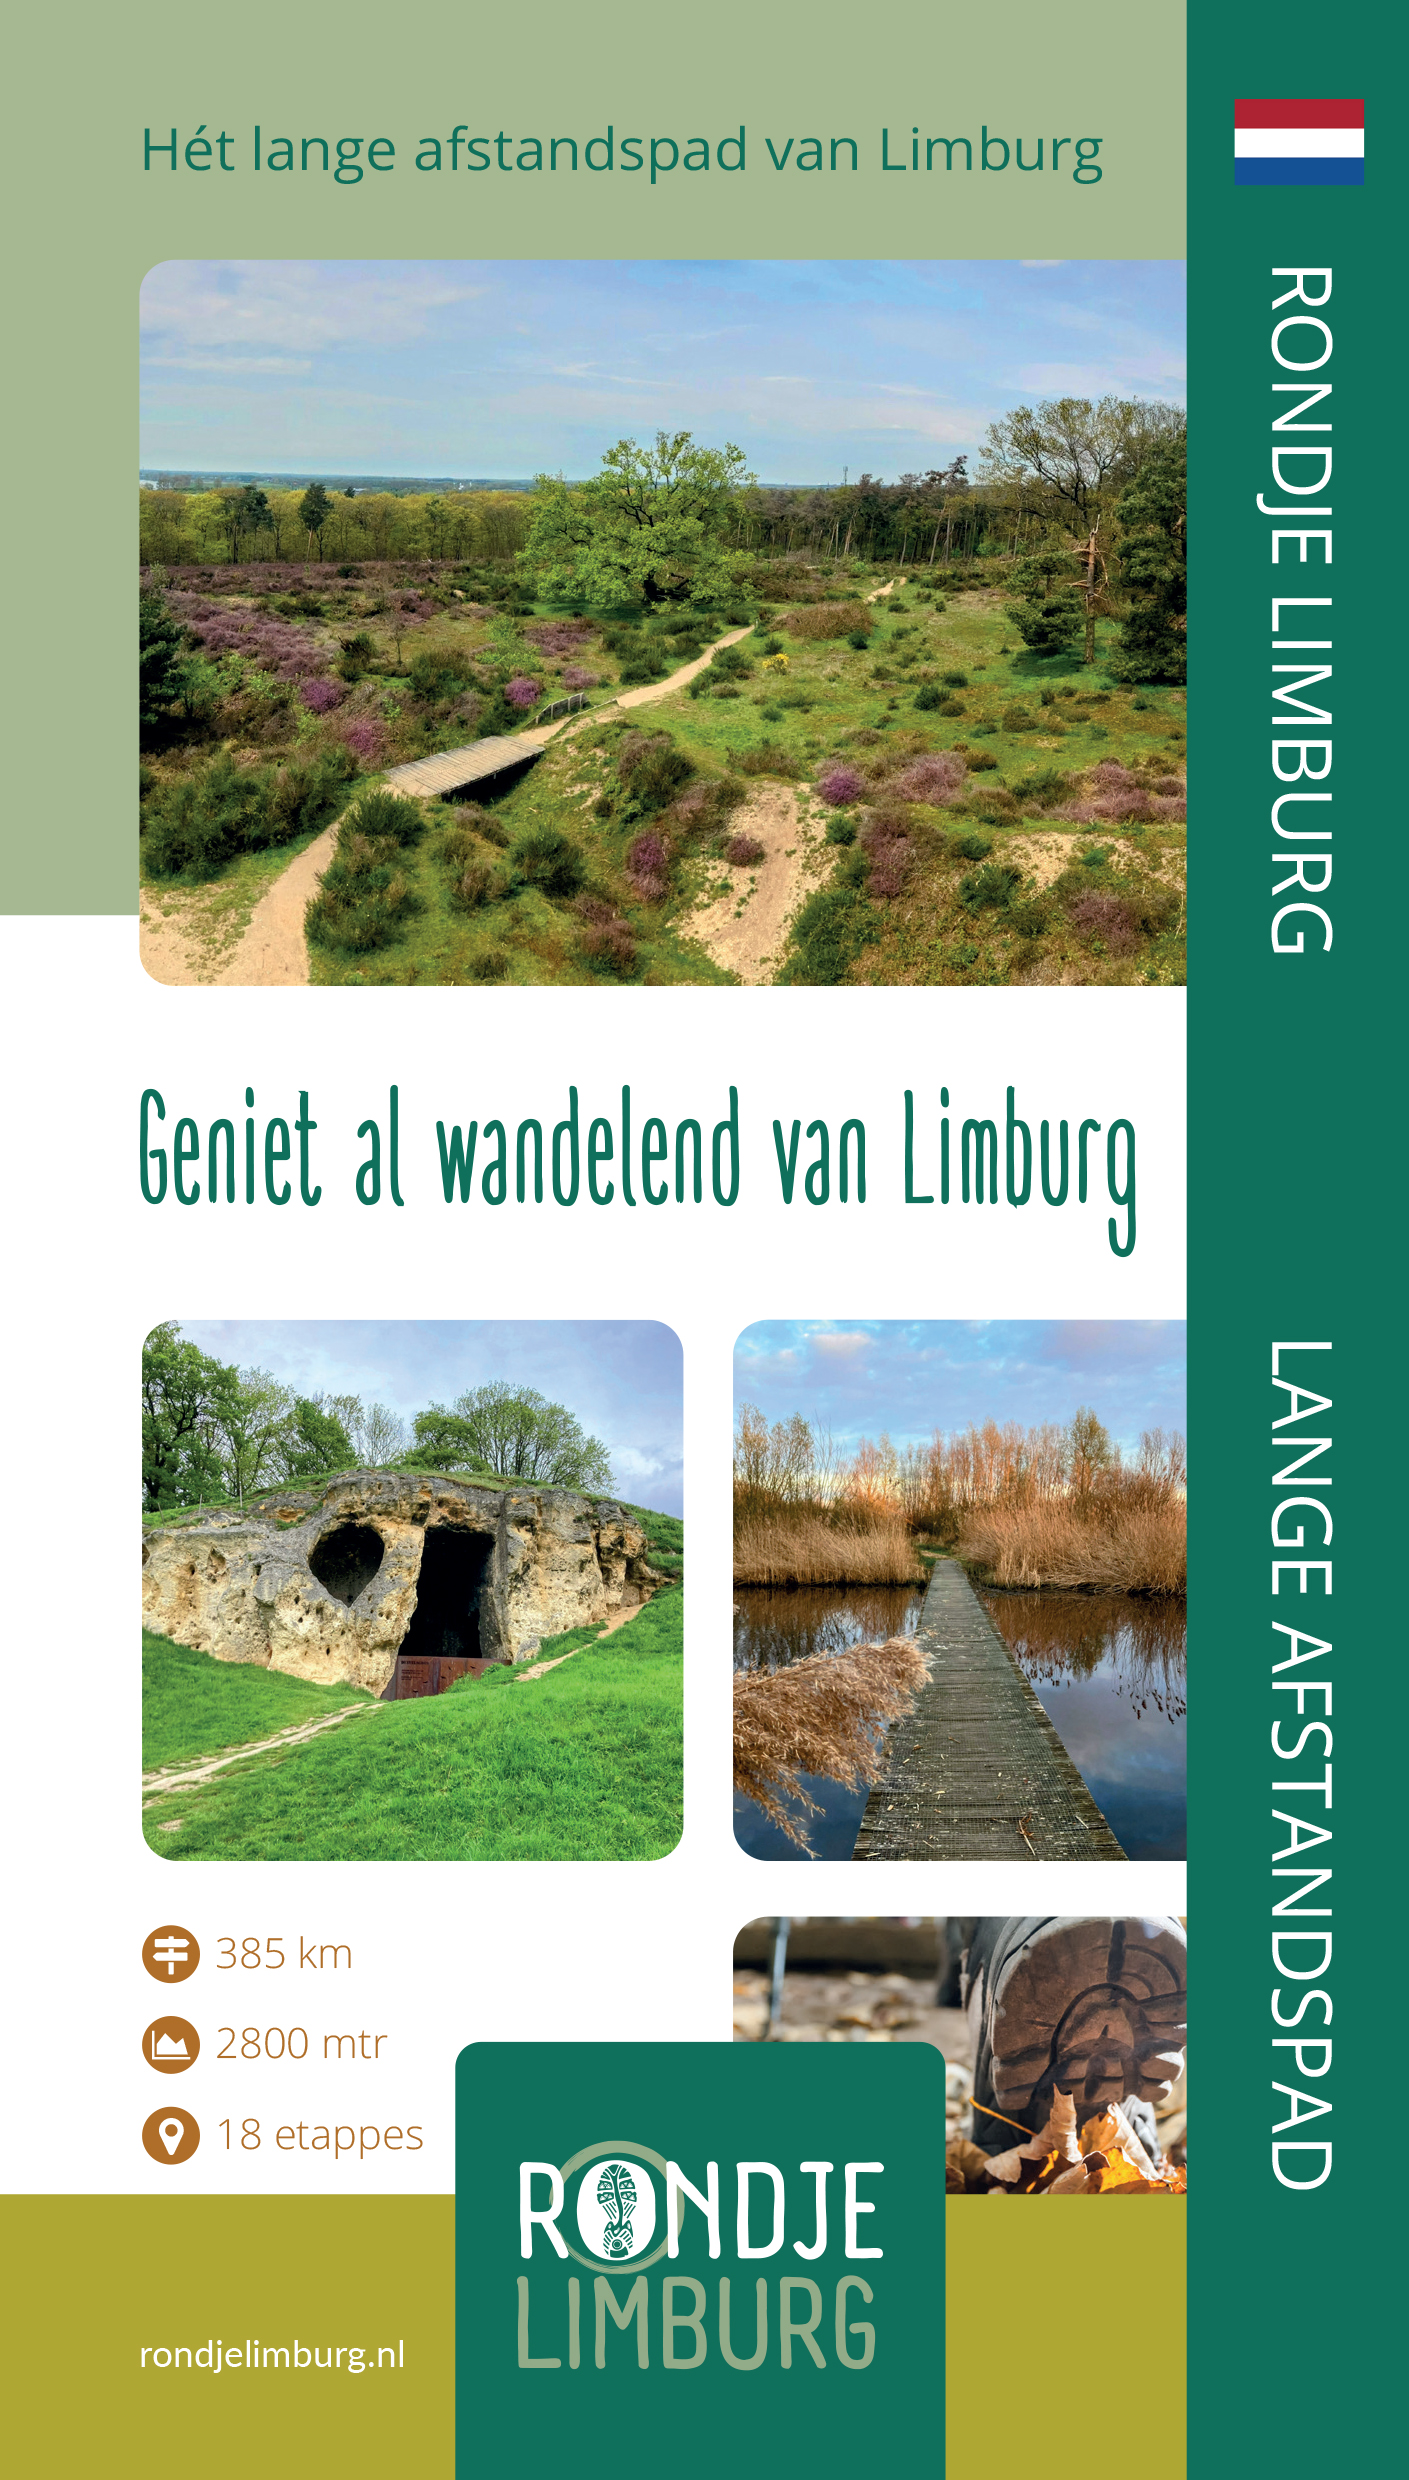 Rondje Limburg (rondjelimburg.nl)